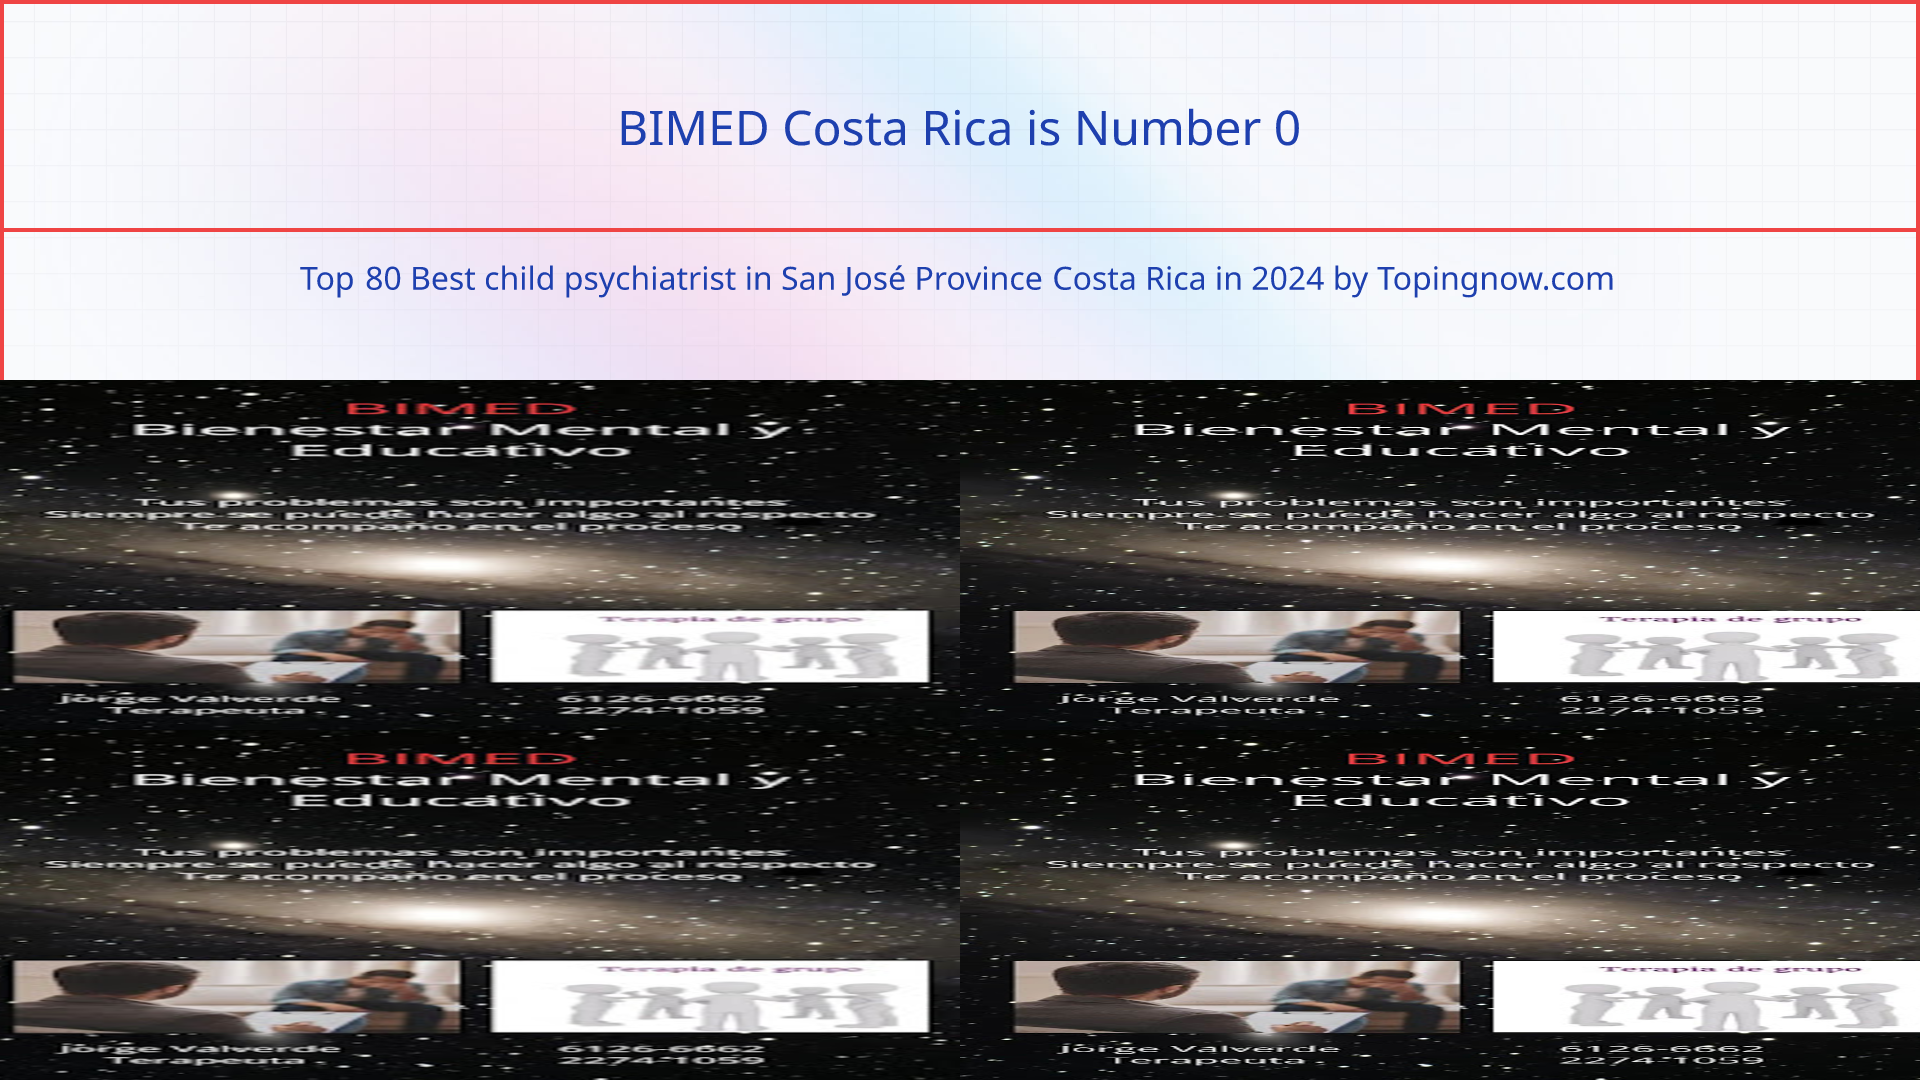 BIMED Costa Rica: Top 80 Best child psychiatrist in San José Province Costa Rica in 2024